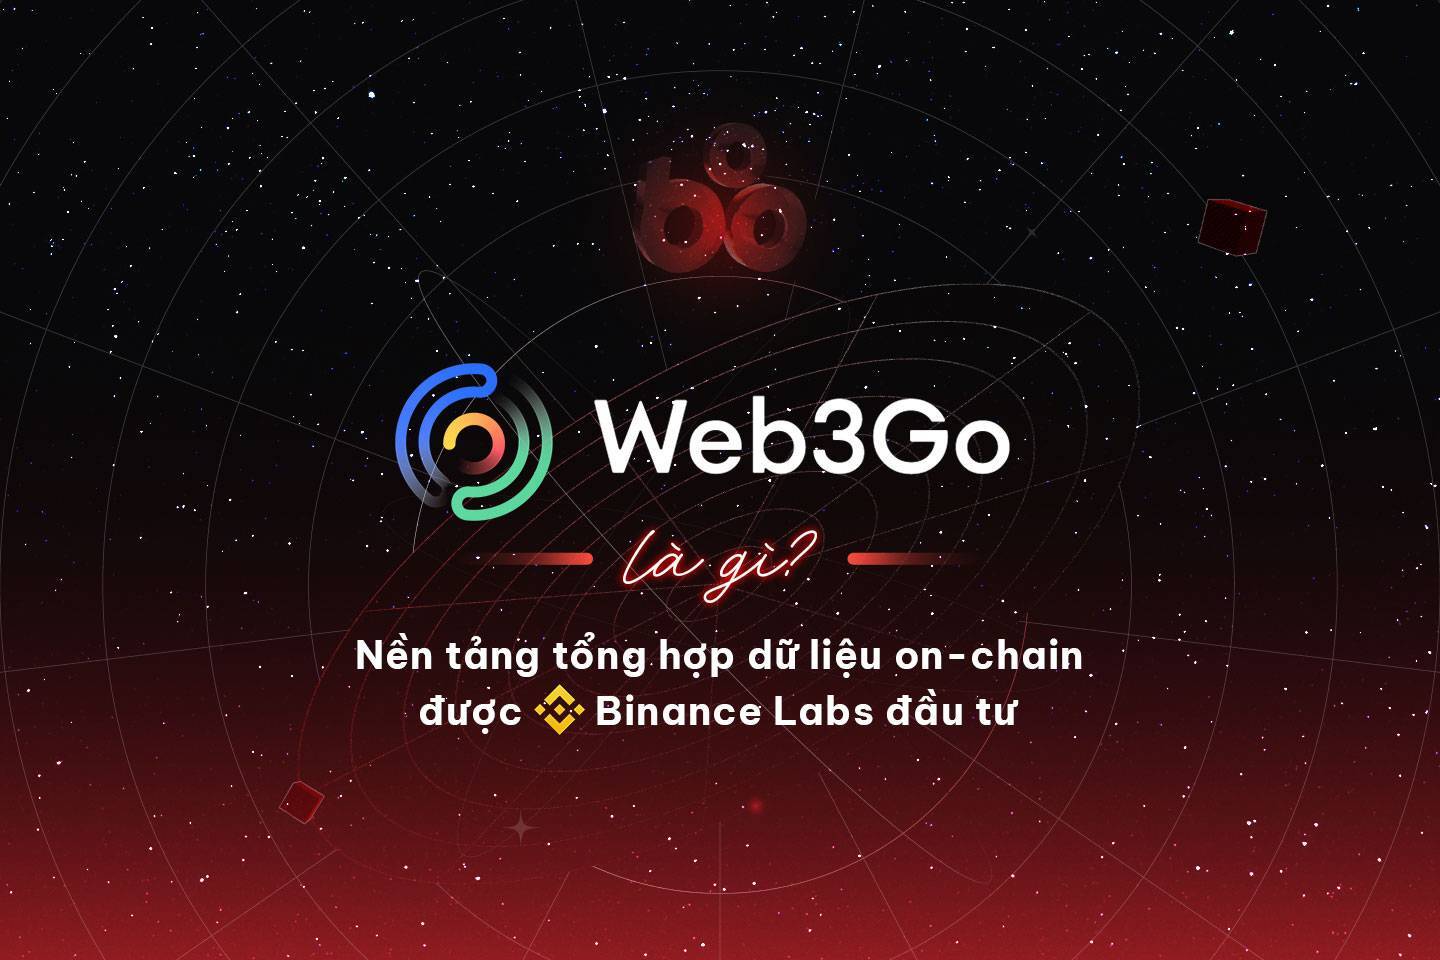 Web3go Là Gì Nền Tảng Tổng Hợp Dữ Liệu On-chain Được Binance Labs Đầu Tư